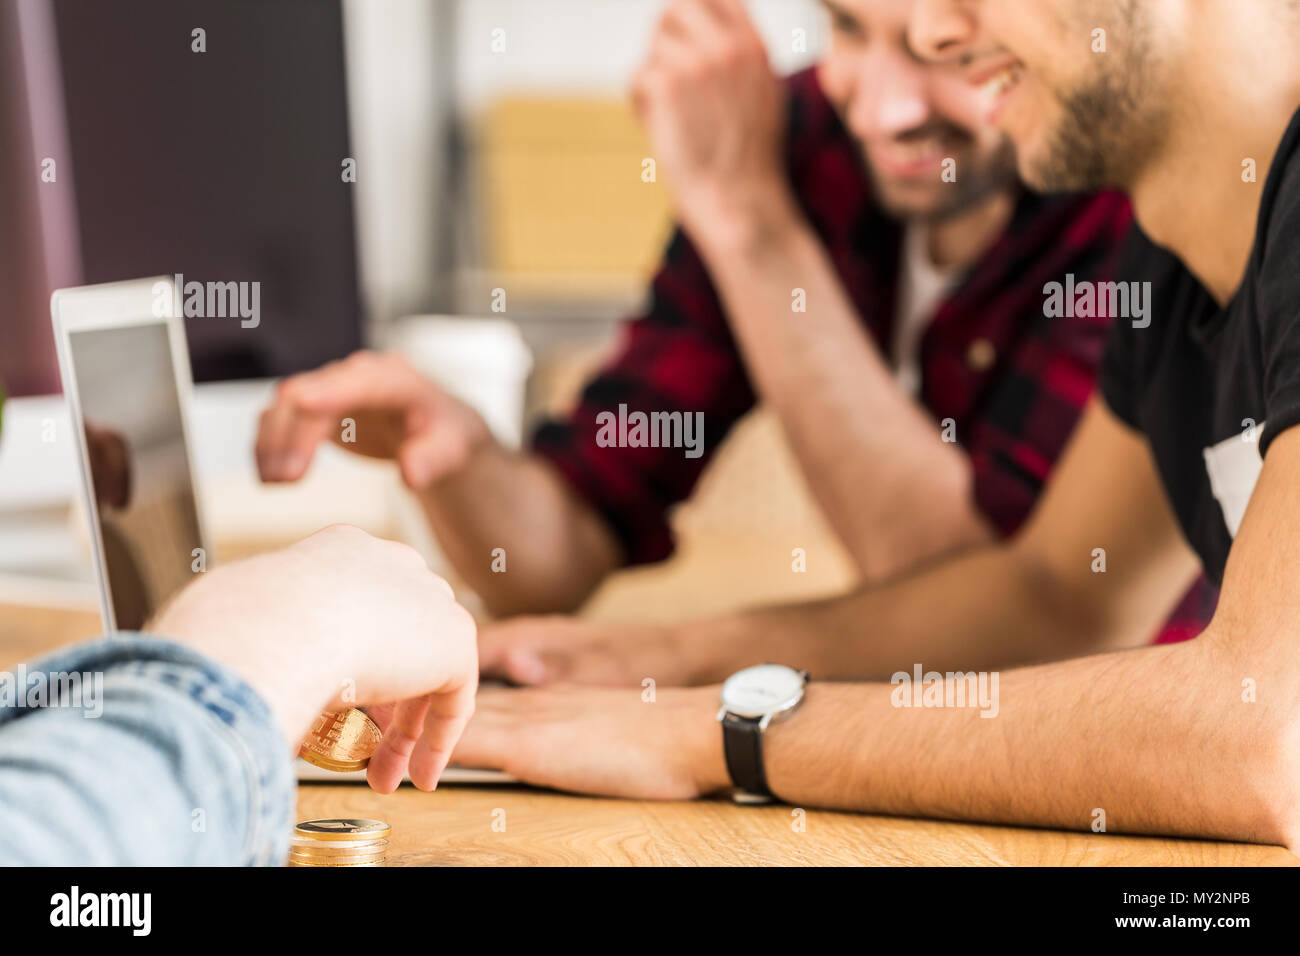 Gruppo di happy amici seduti insieme davanti a un computer portatile. Concentrarsi sulle mani dell'uomo cryptocurrency holding. Foto Stock